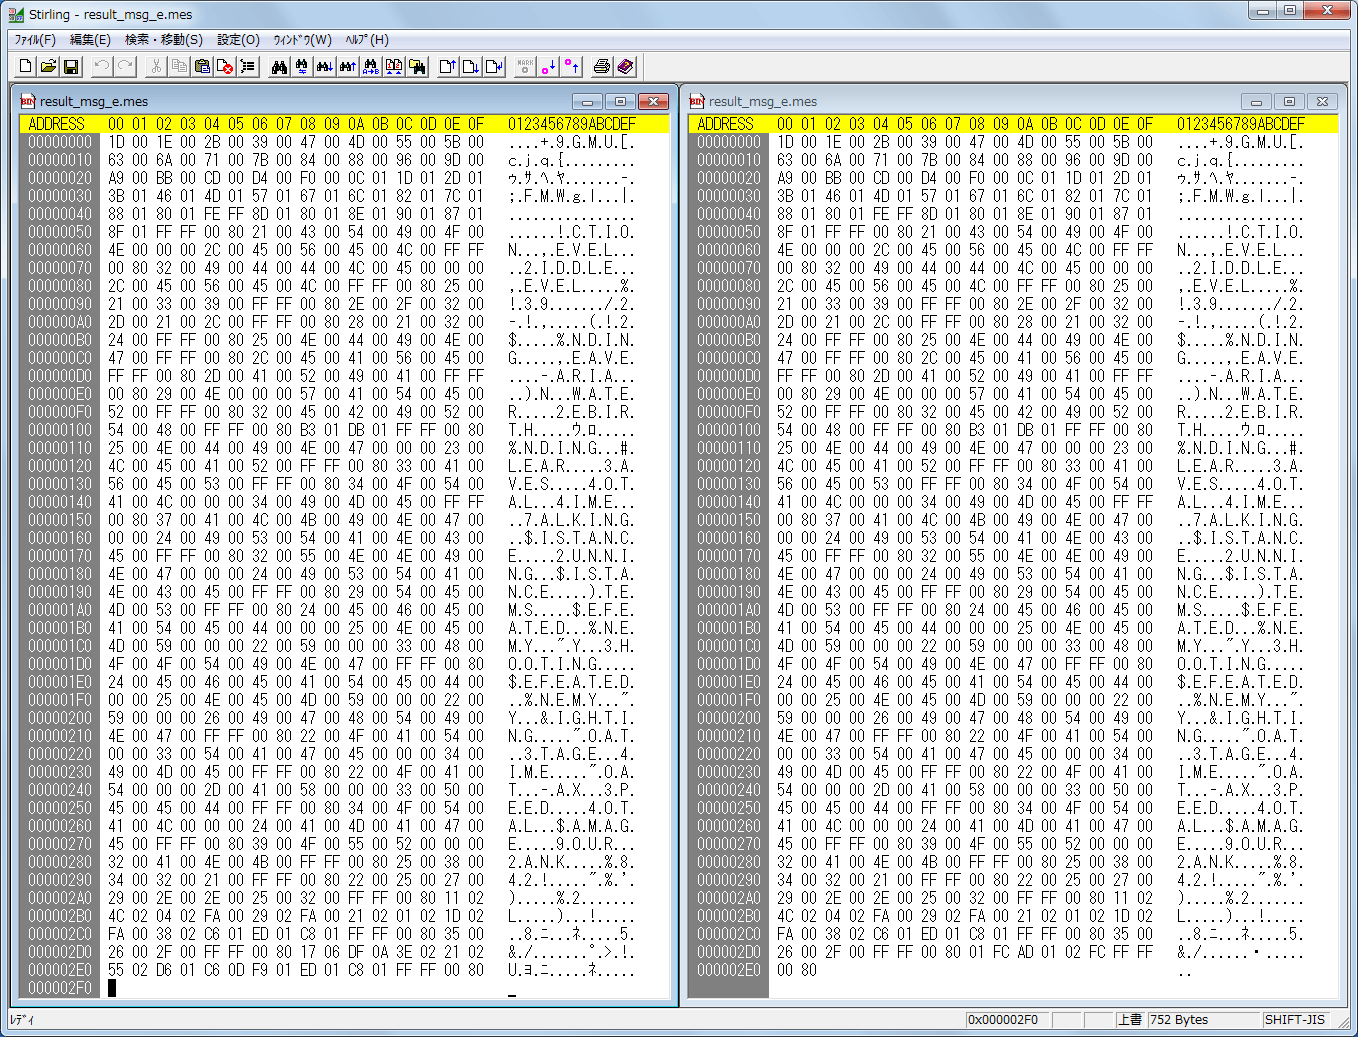 以前、2ch にアップされていたサイレントヒル2 mes ファイルと SH2DCJ2.exe を使って抽出した mes ファイル 全72ファイルを WinMerge で比較した際、result_msg_e.mes のみ一致しないことが判明し、クリア後のスコア画面を表示させたところ SH2DCJ2.exe で抽出した result_msg_e.mes を入れたときにメッセージが表示されないことが判明した。画像左側が 2ch にアップされていた日本語化ファイル result_msg_e.mes ファイル、画像右側が SH2DCJ2.exe を使って ETC.MGF から抽出した result_msg_e.mes ファイル